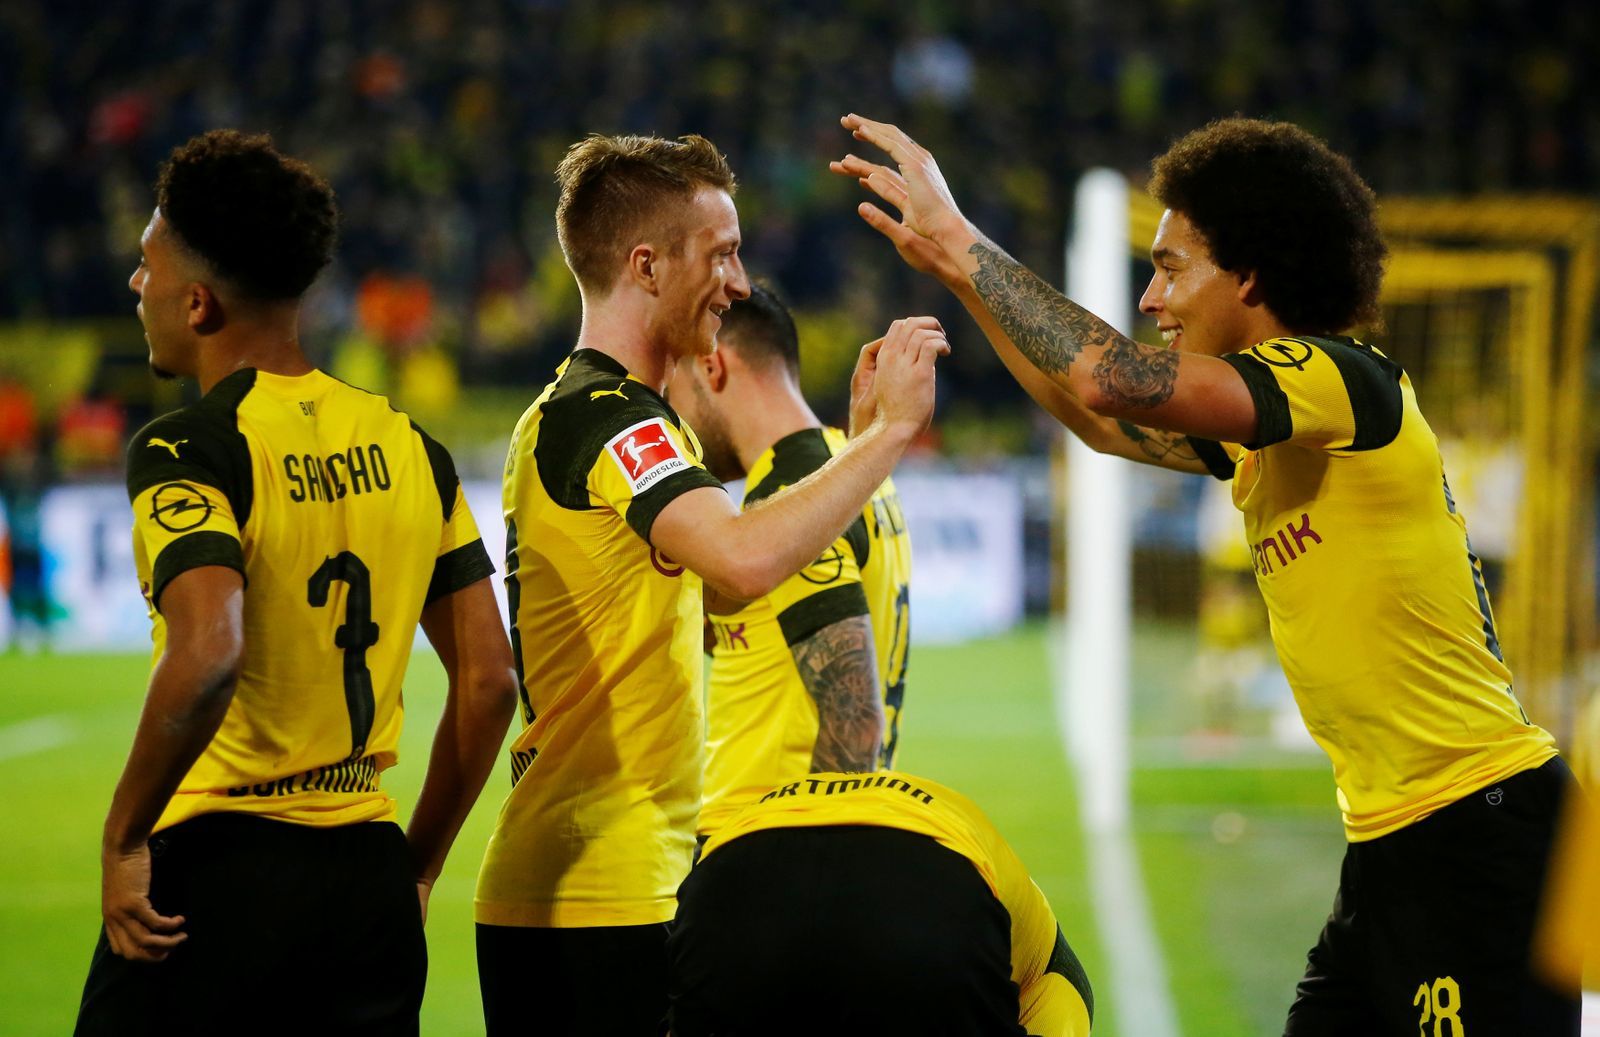 Bundesliga 2018/19, Dortmund - Bayern Mnichov: Radost fotbalistů Dortmundu